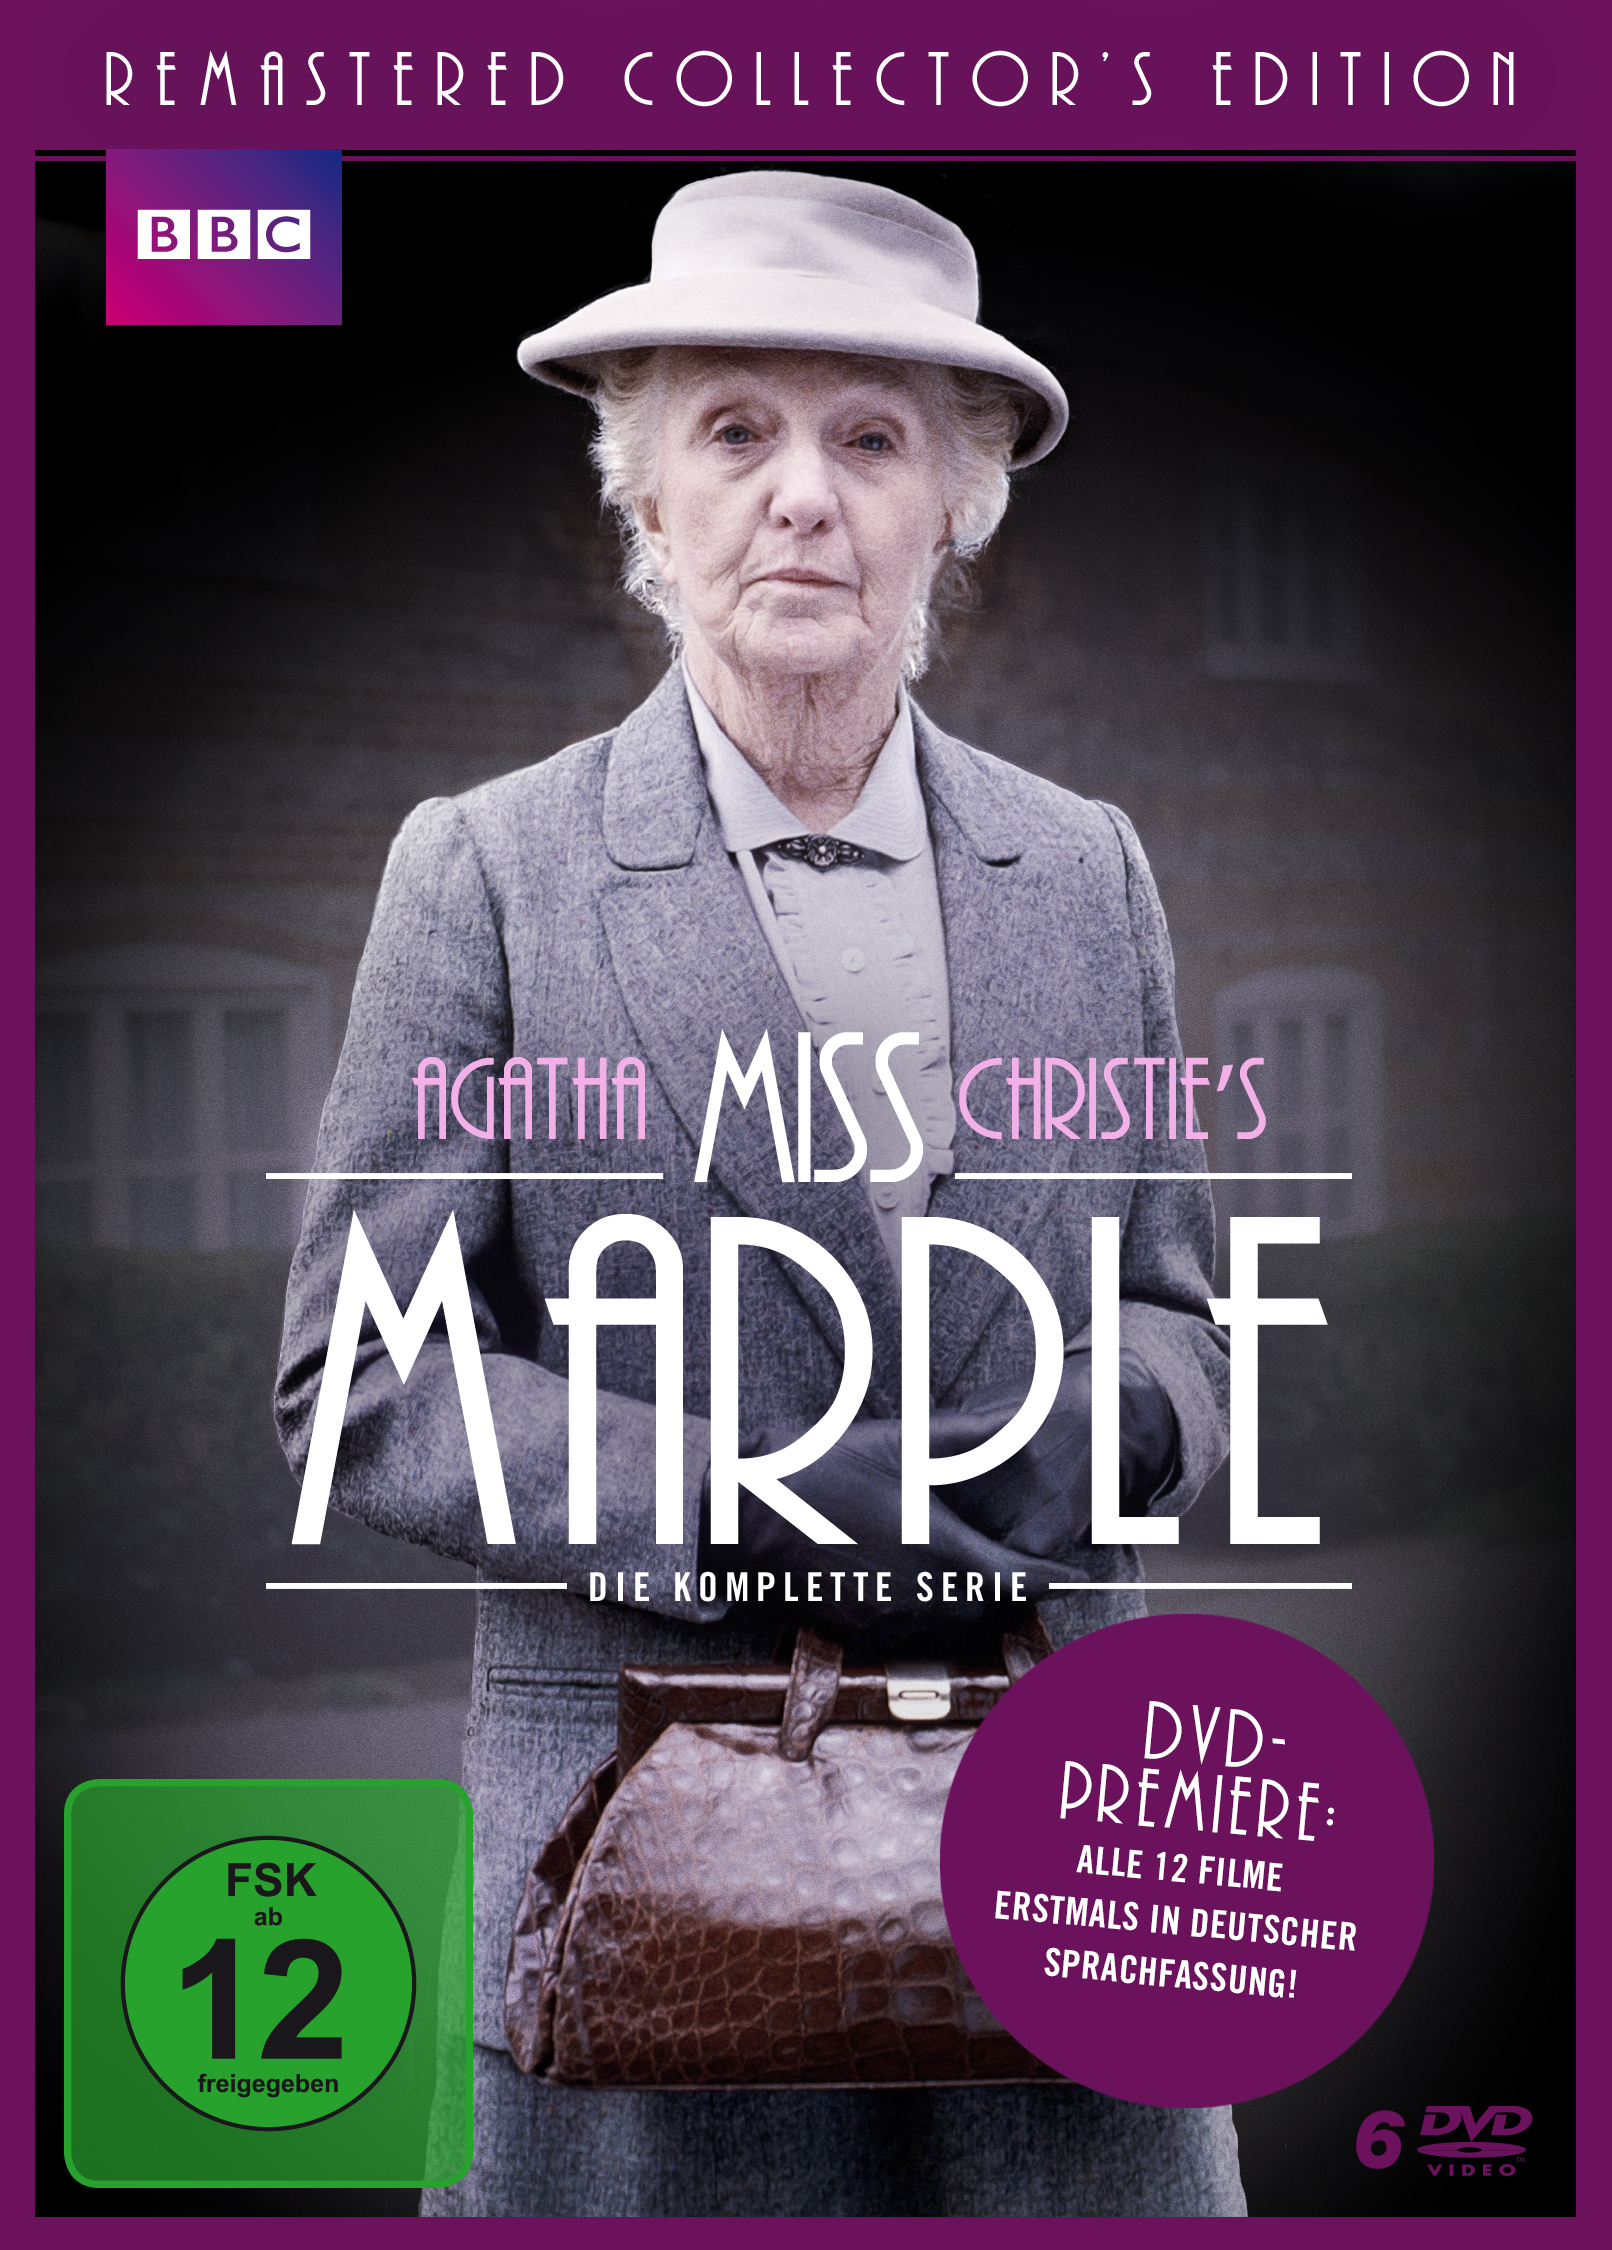 Marple Filmen Miss komplette - DVD 12 allen Die Serie mit